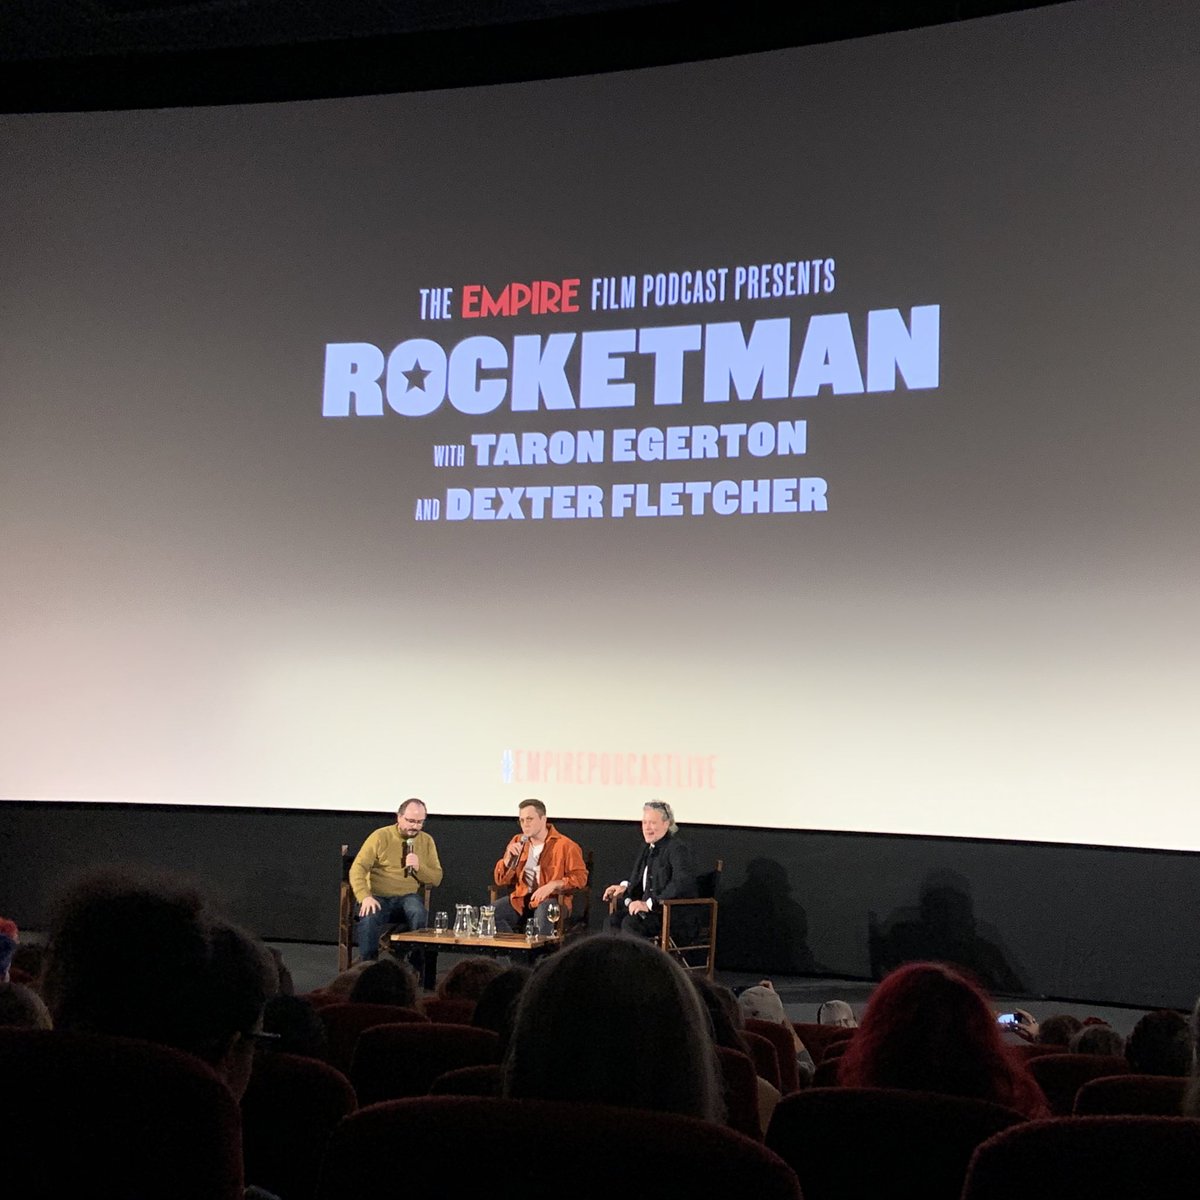 Taron Egerton and Dexter Fletcher have arrived for a big spoiler-filled #Rocketman interview 🚀 #EmpirePodcastLive